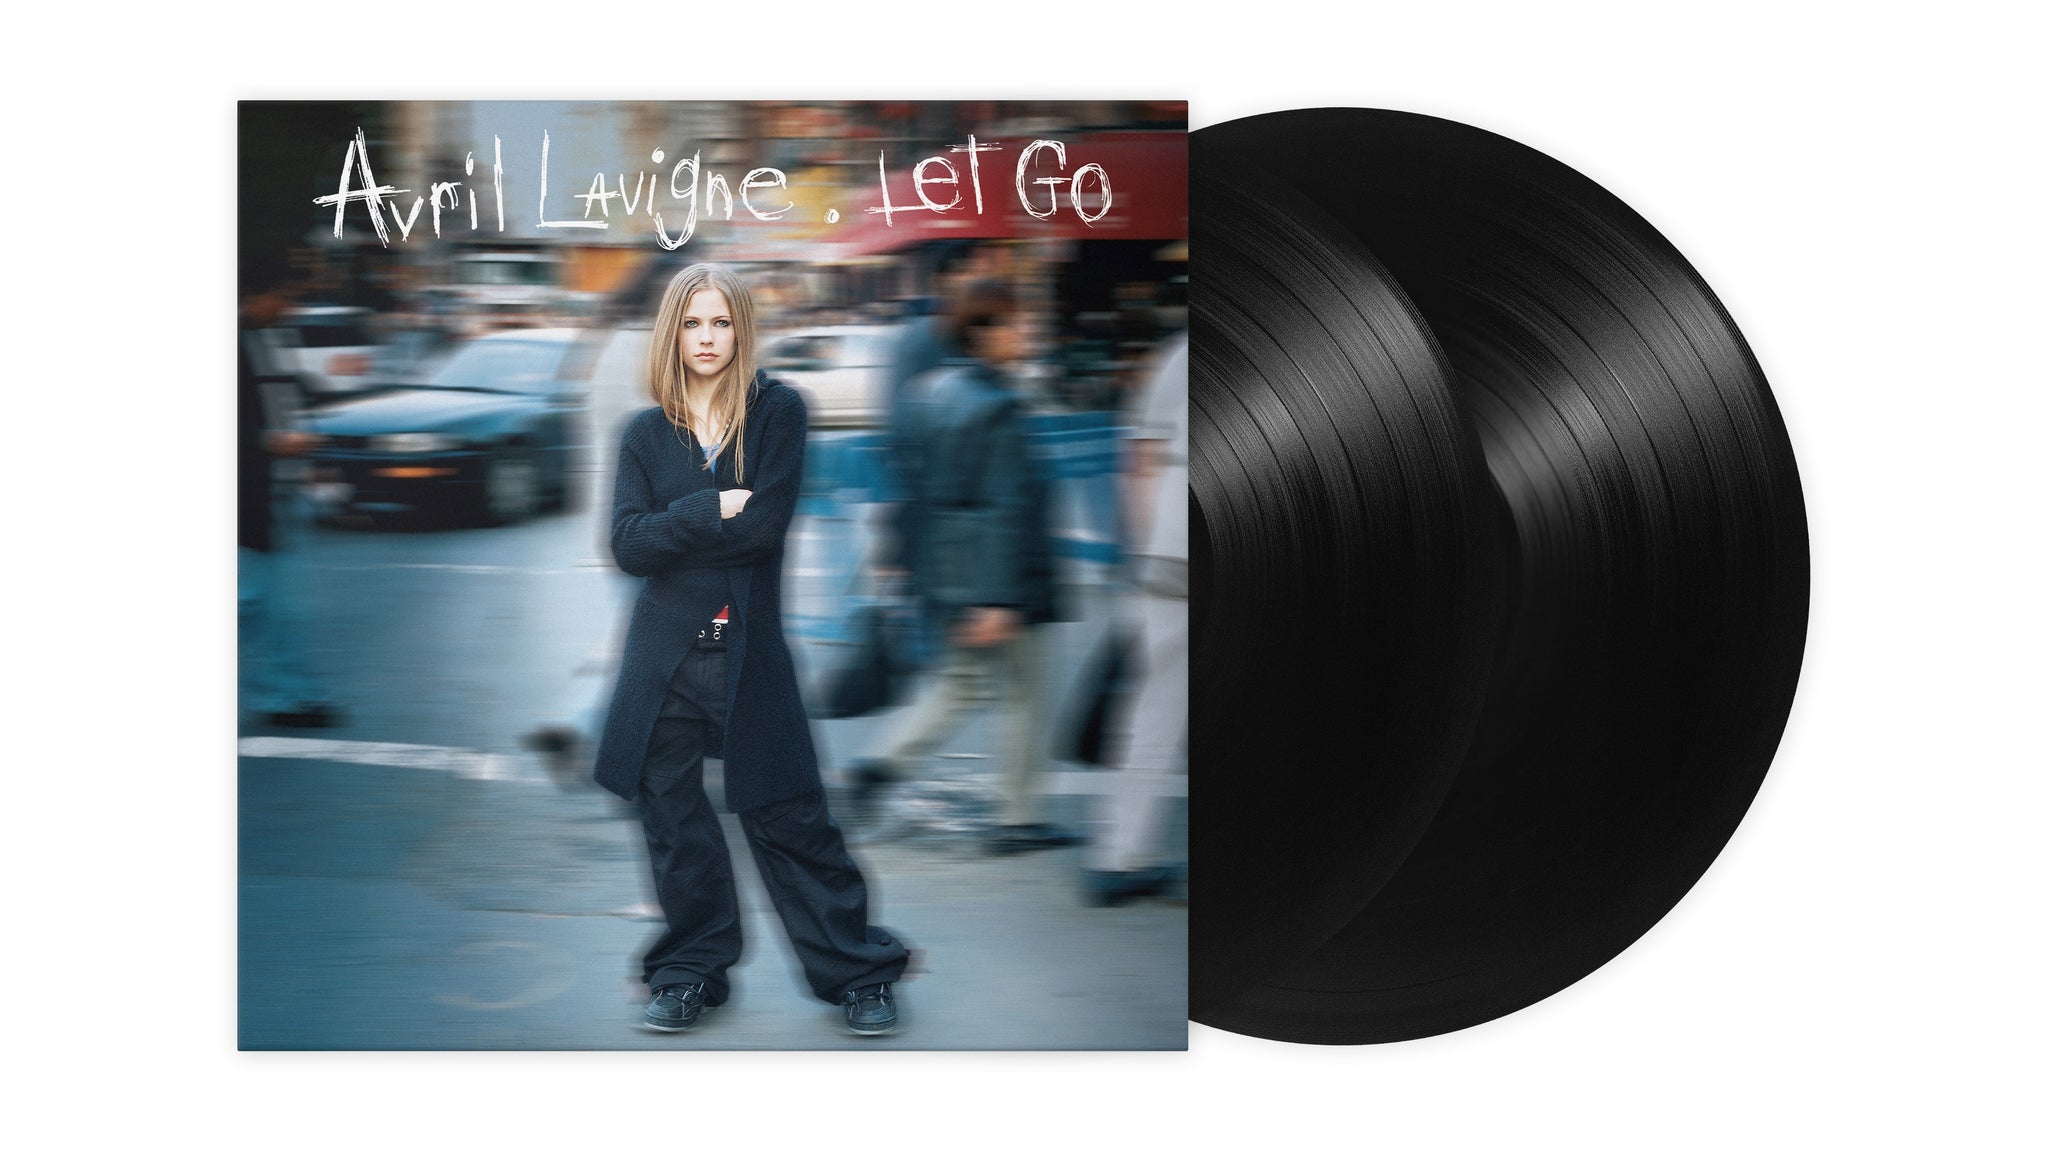 Avril Lavigne "Let Go" 2x12" Black Vinyl - PRE-ORDER